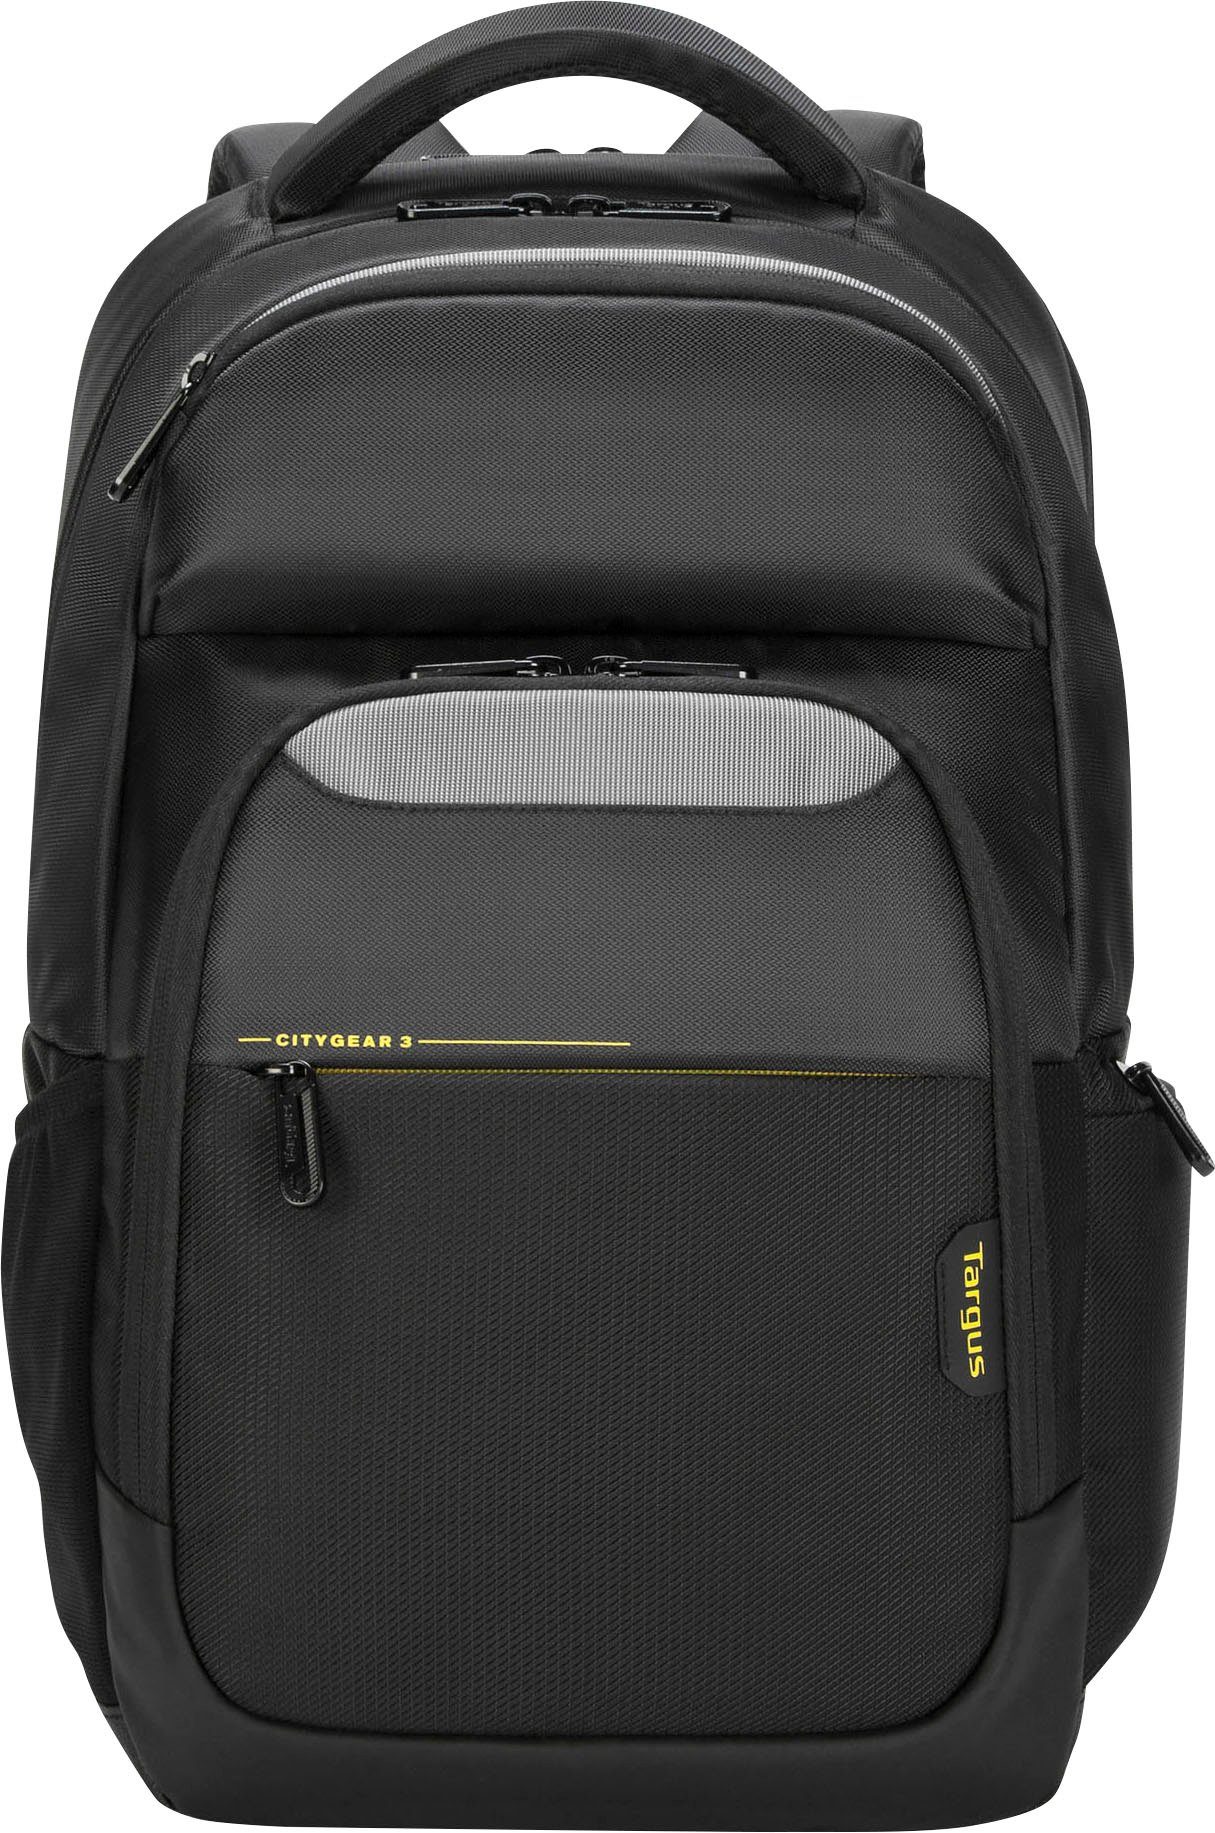 Targus Laptoptasche CG3 15.6 Backpack W raincover, Netztaschen und -fächer  mit Reißverschluss für optimale Organisation